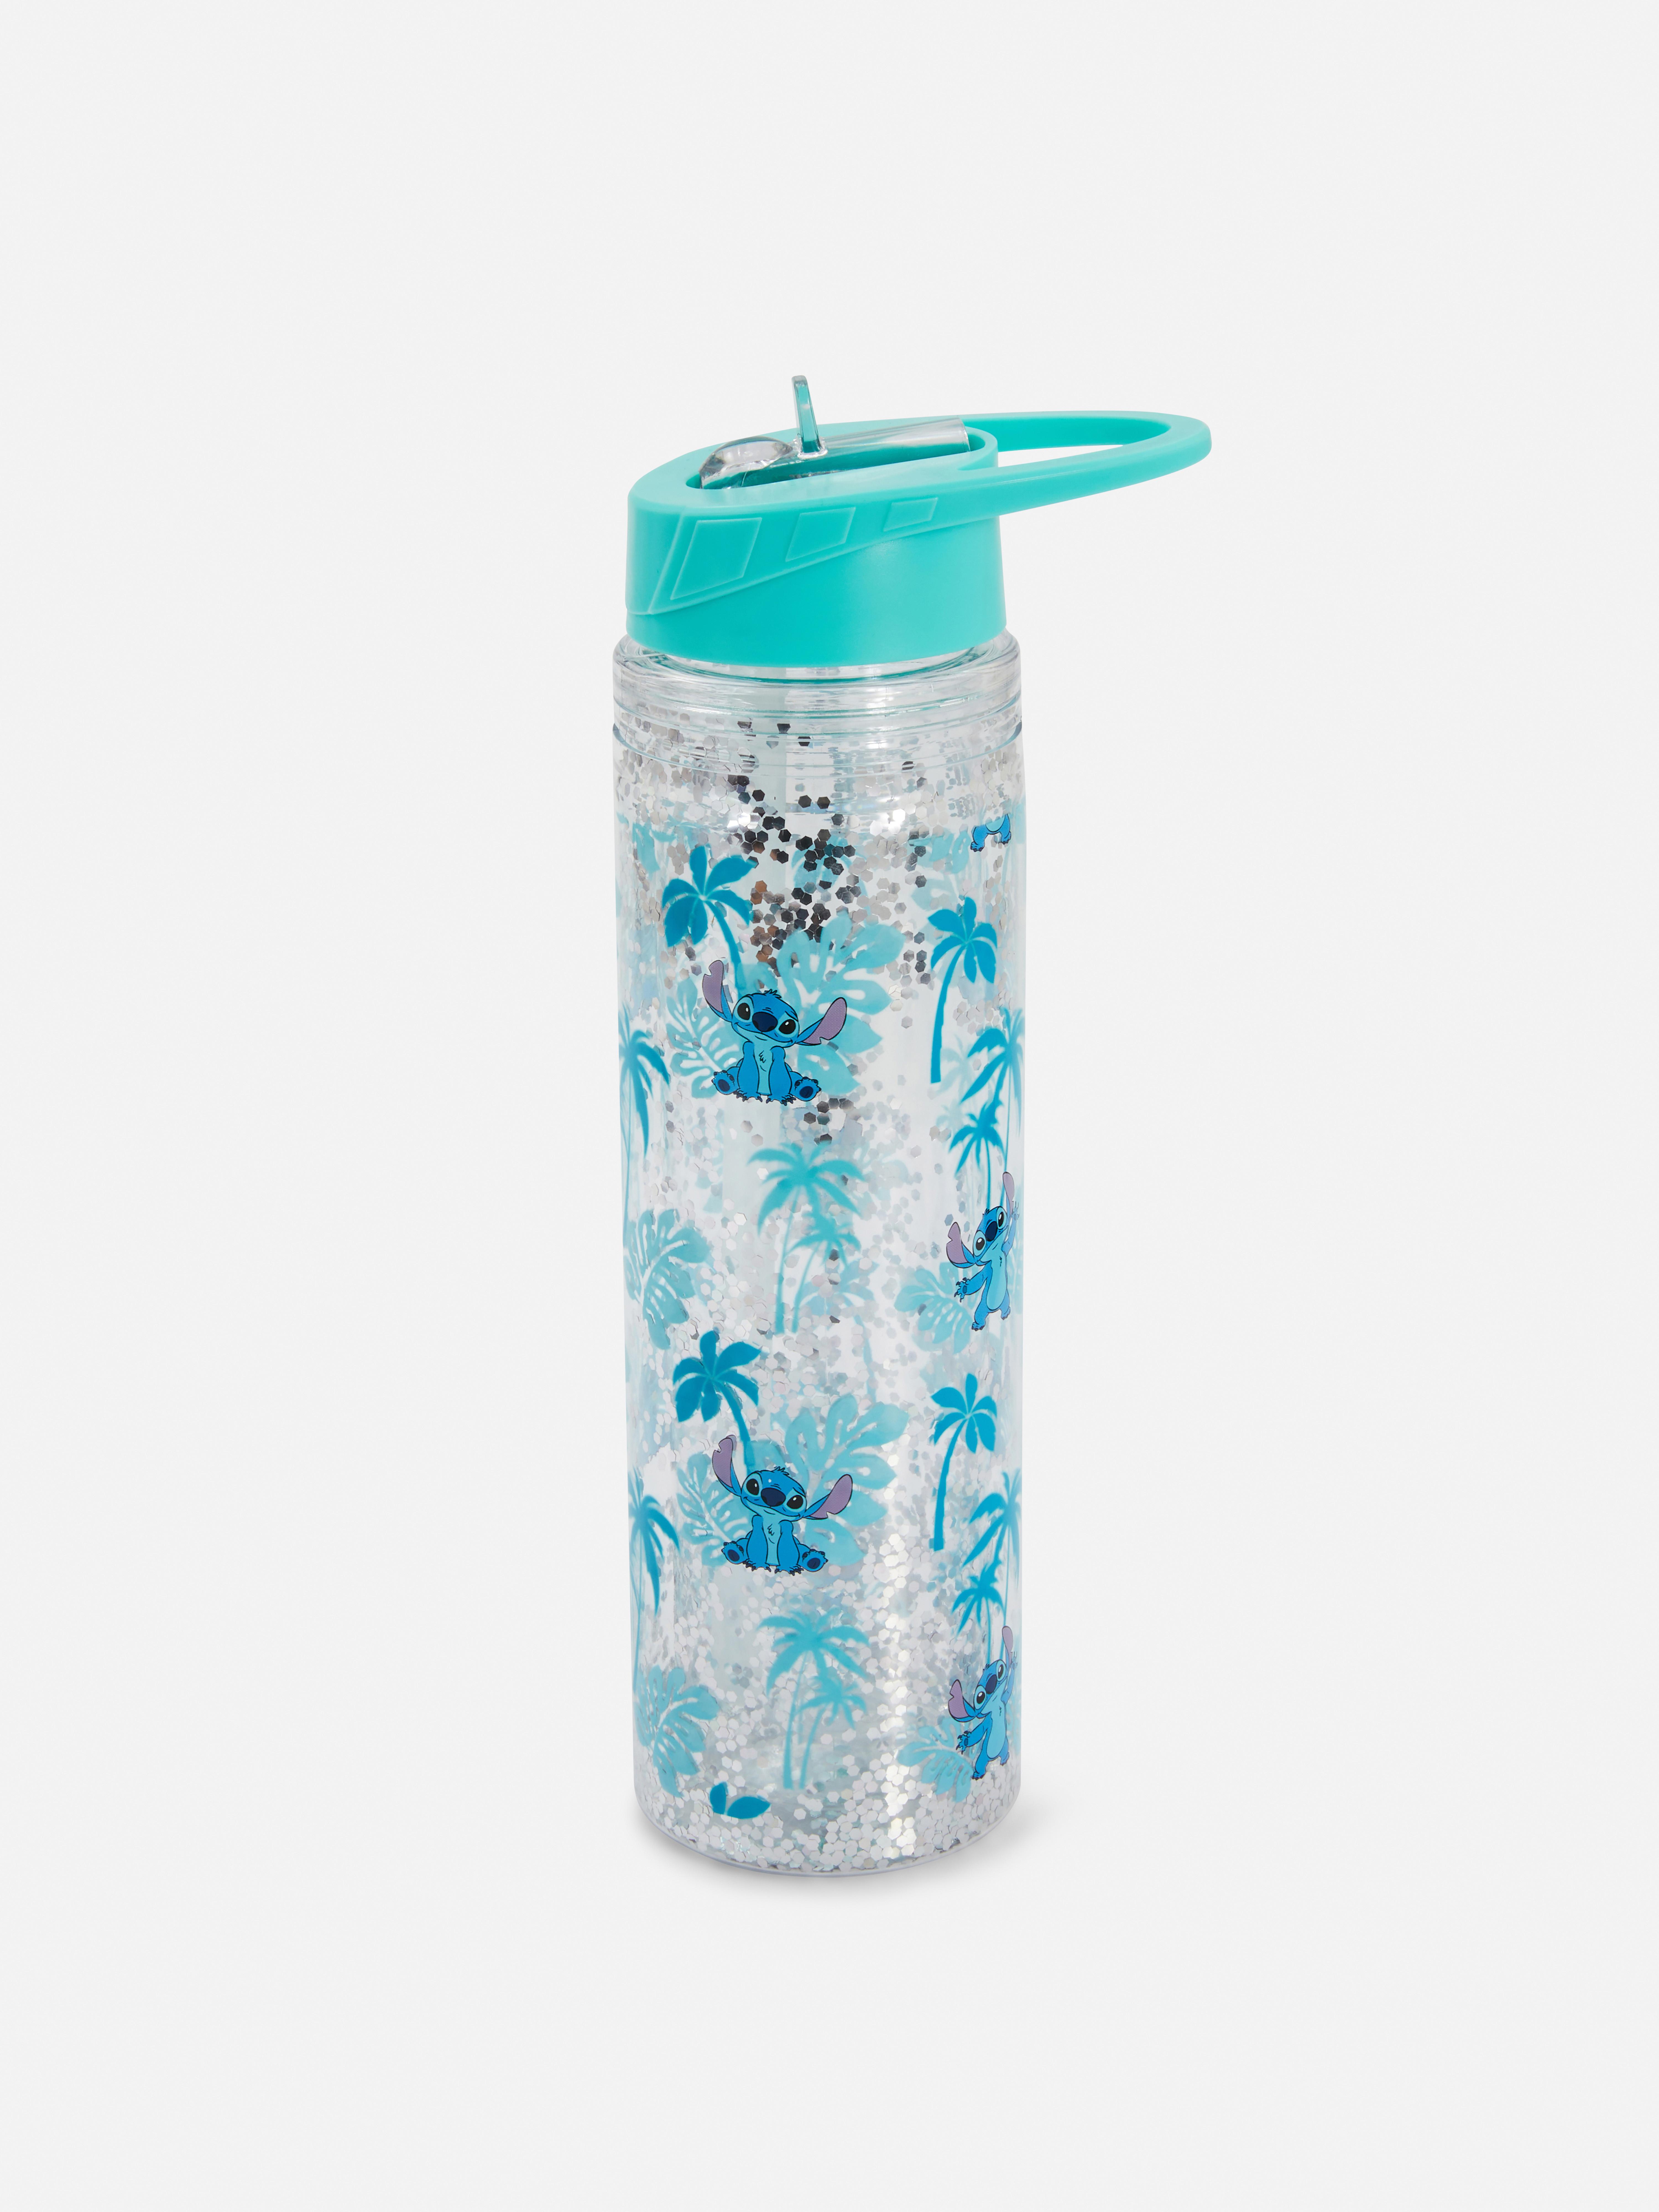 Disney’s Lilo & Stitch Floating Glitter Water Bottle